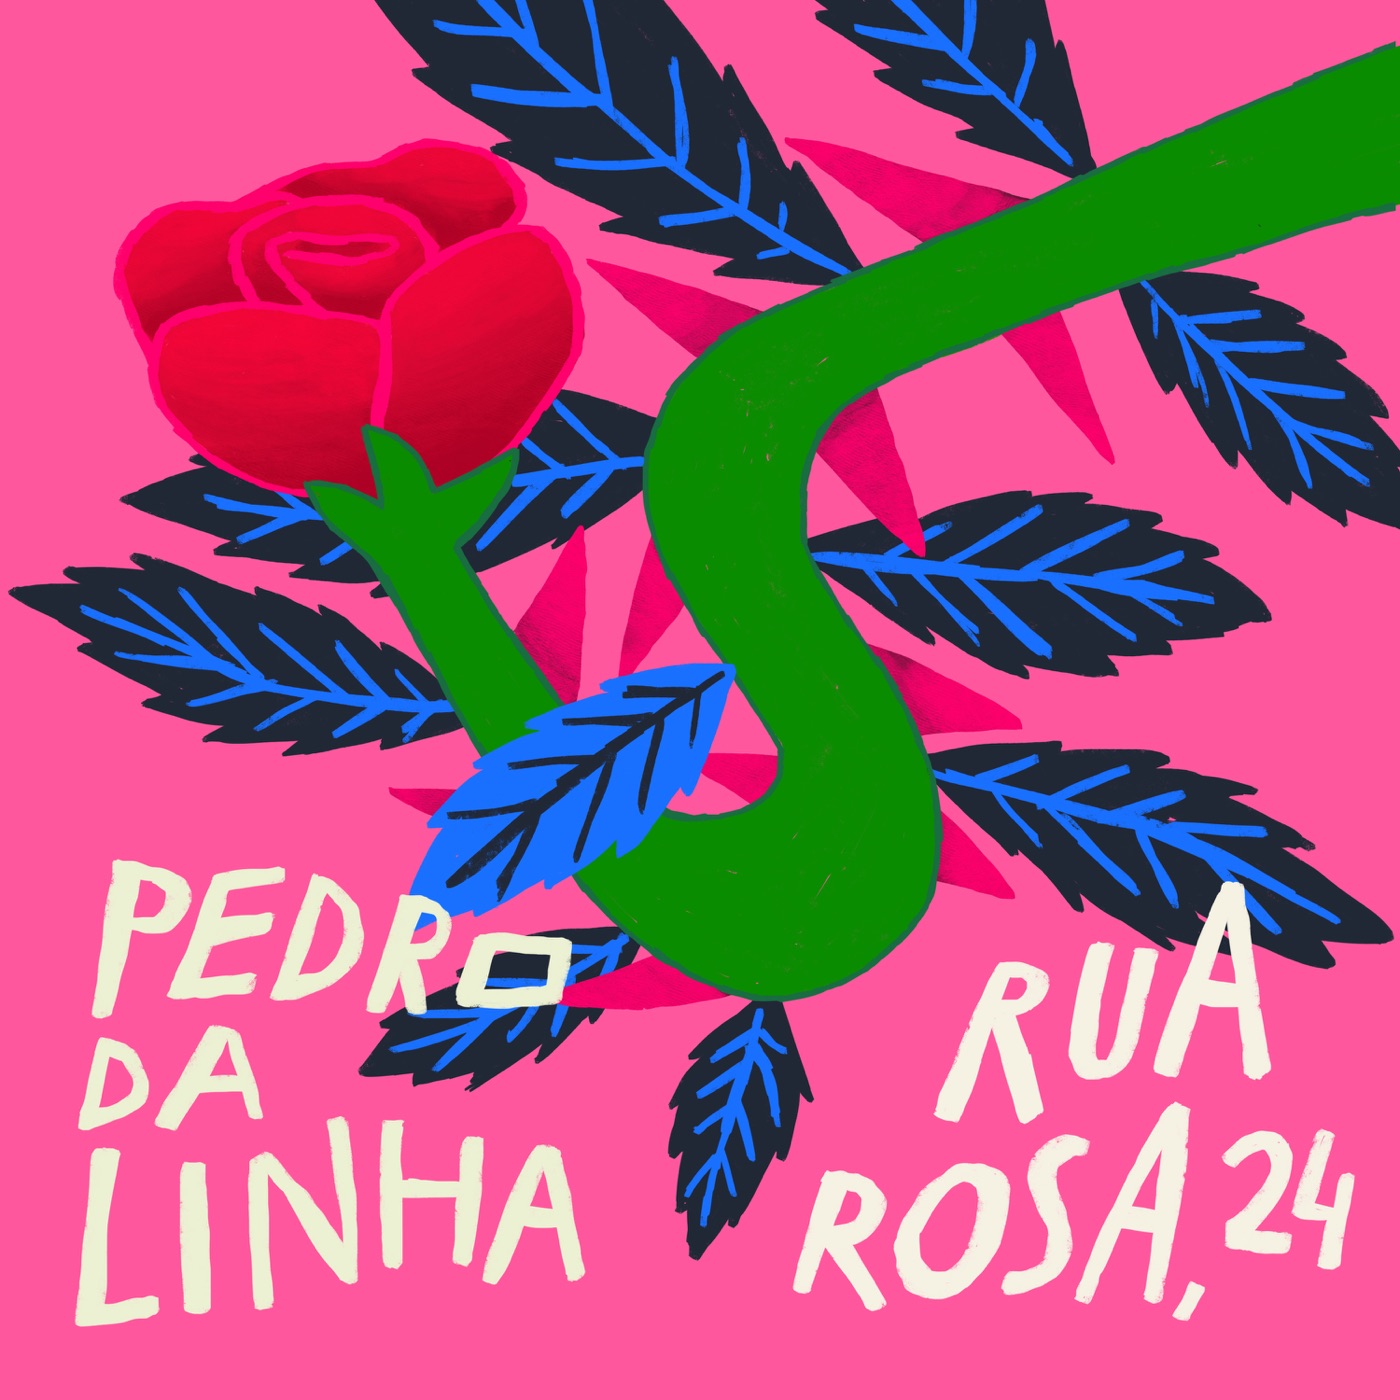 Rua Rosa, 24 (EP) by Pedro da Linha